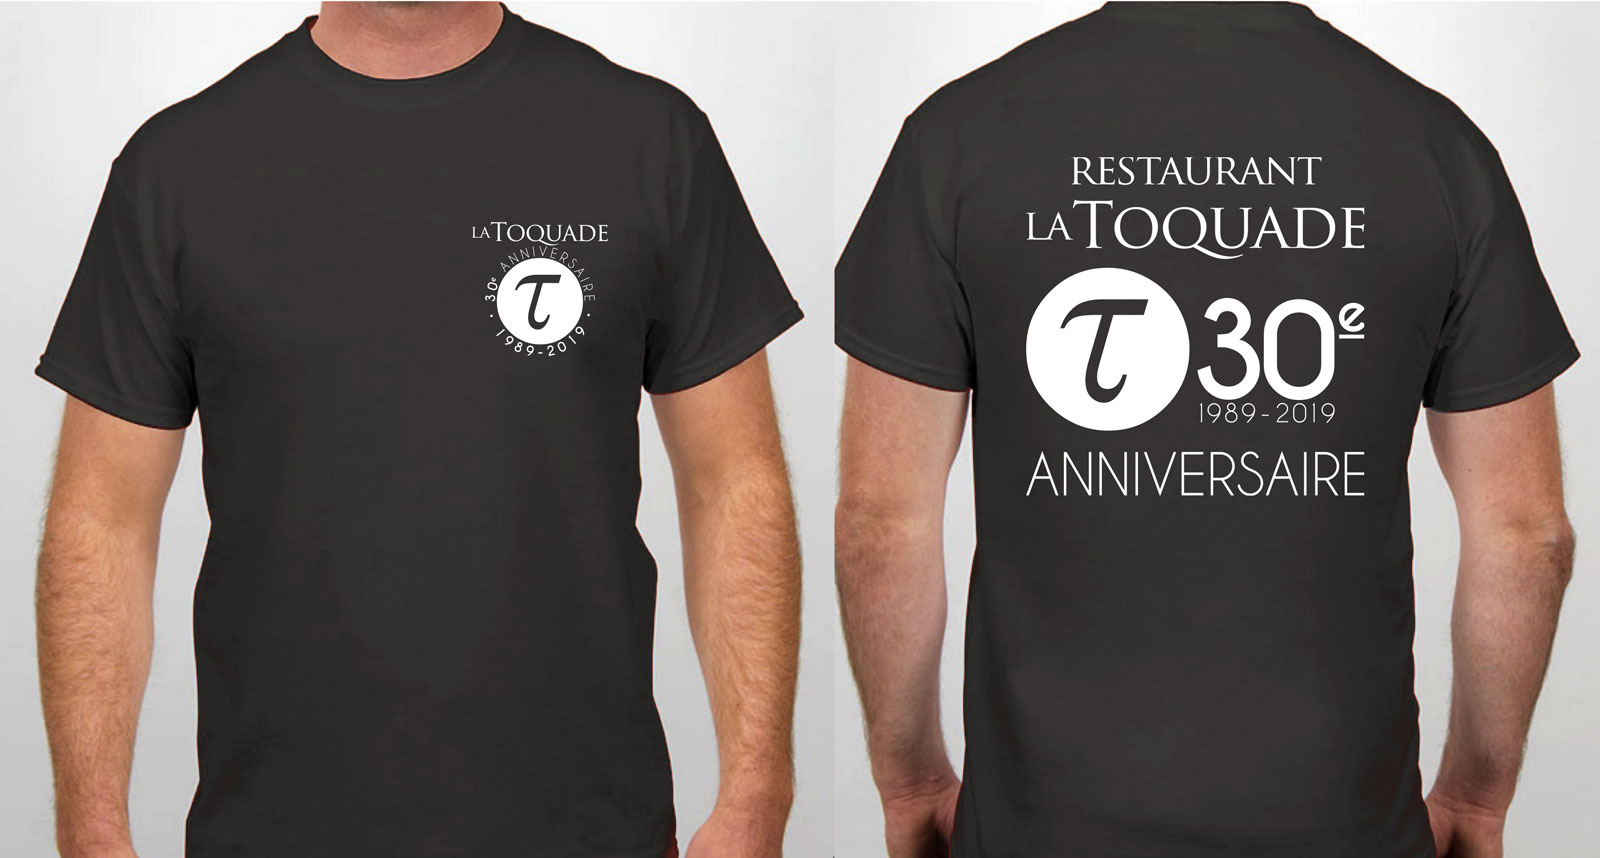 La Toquade restaurant - t-shirt